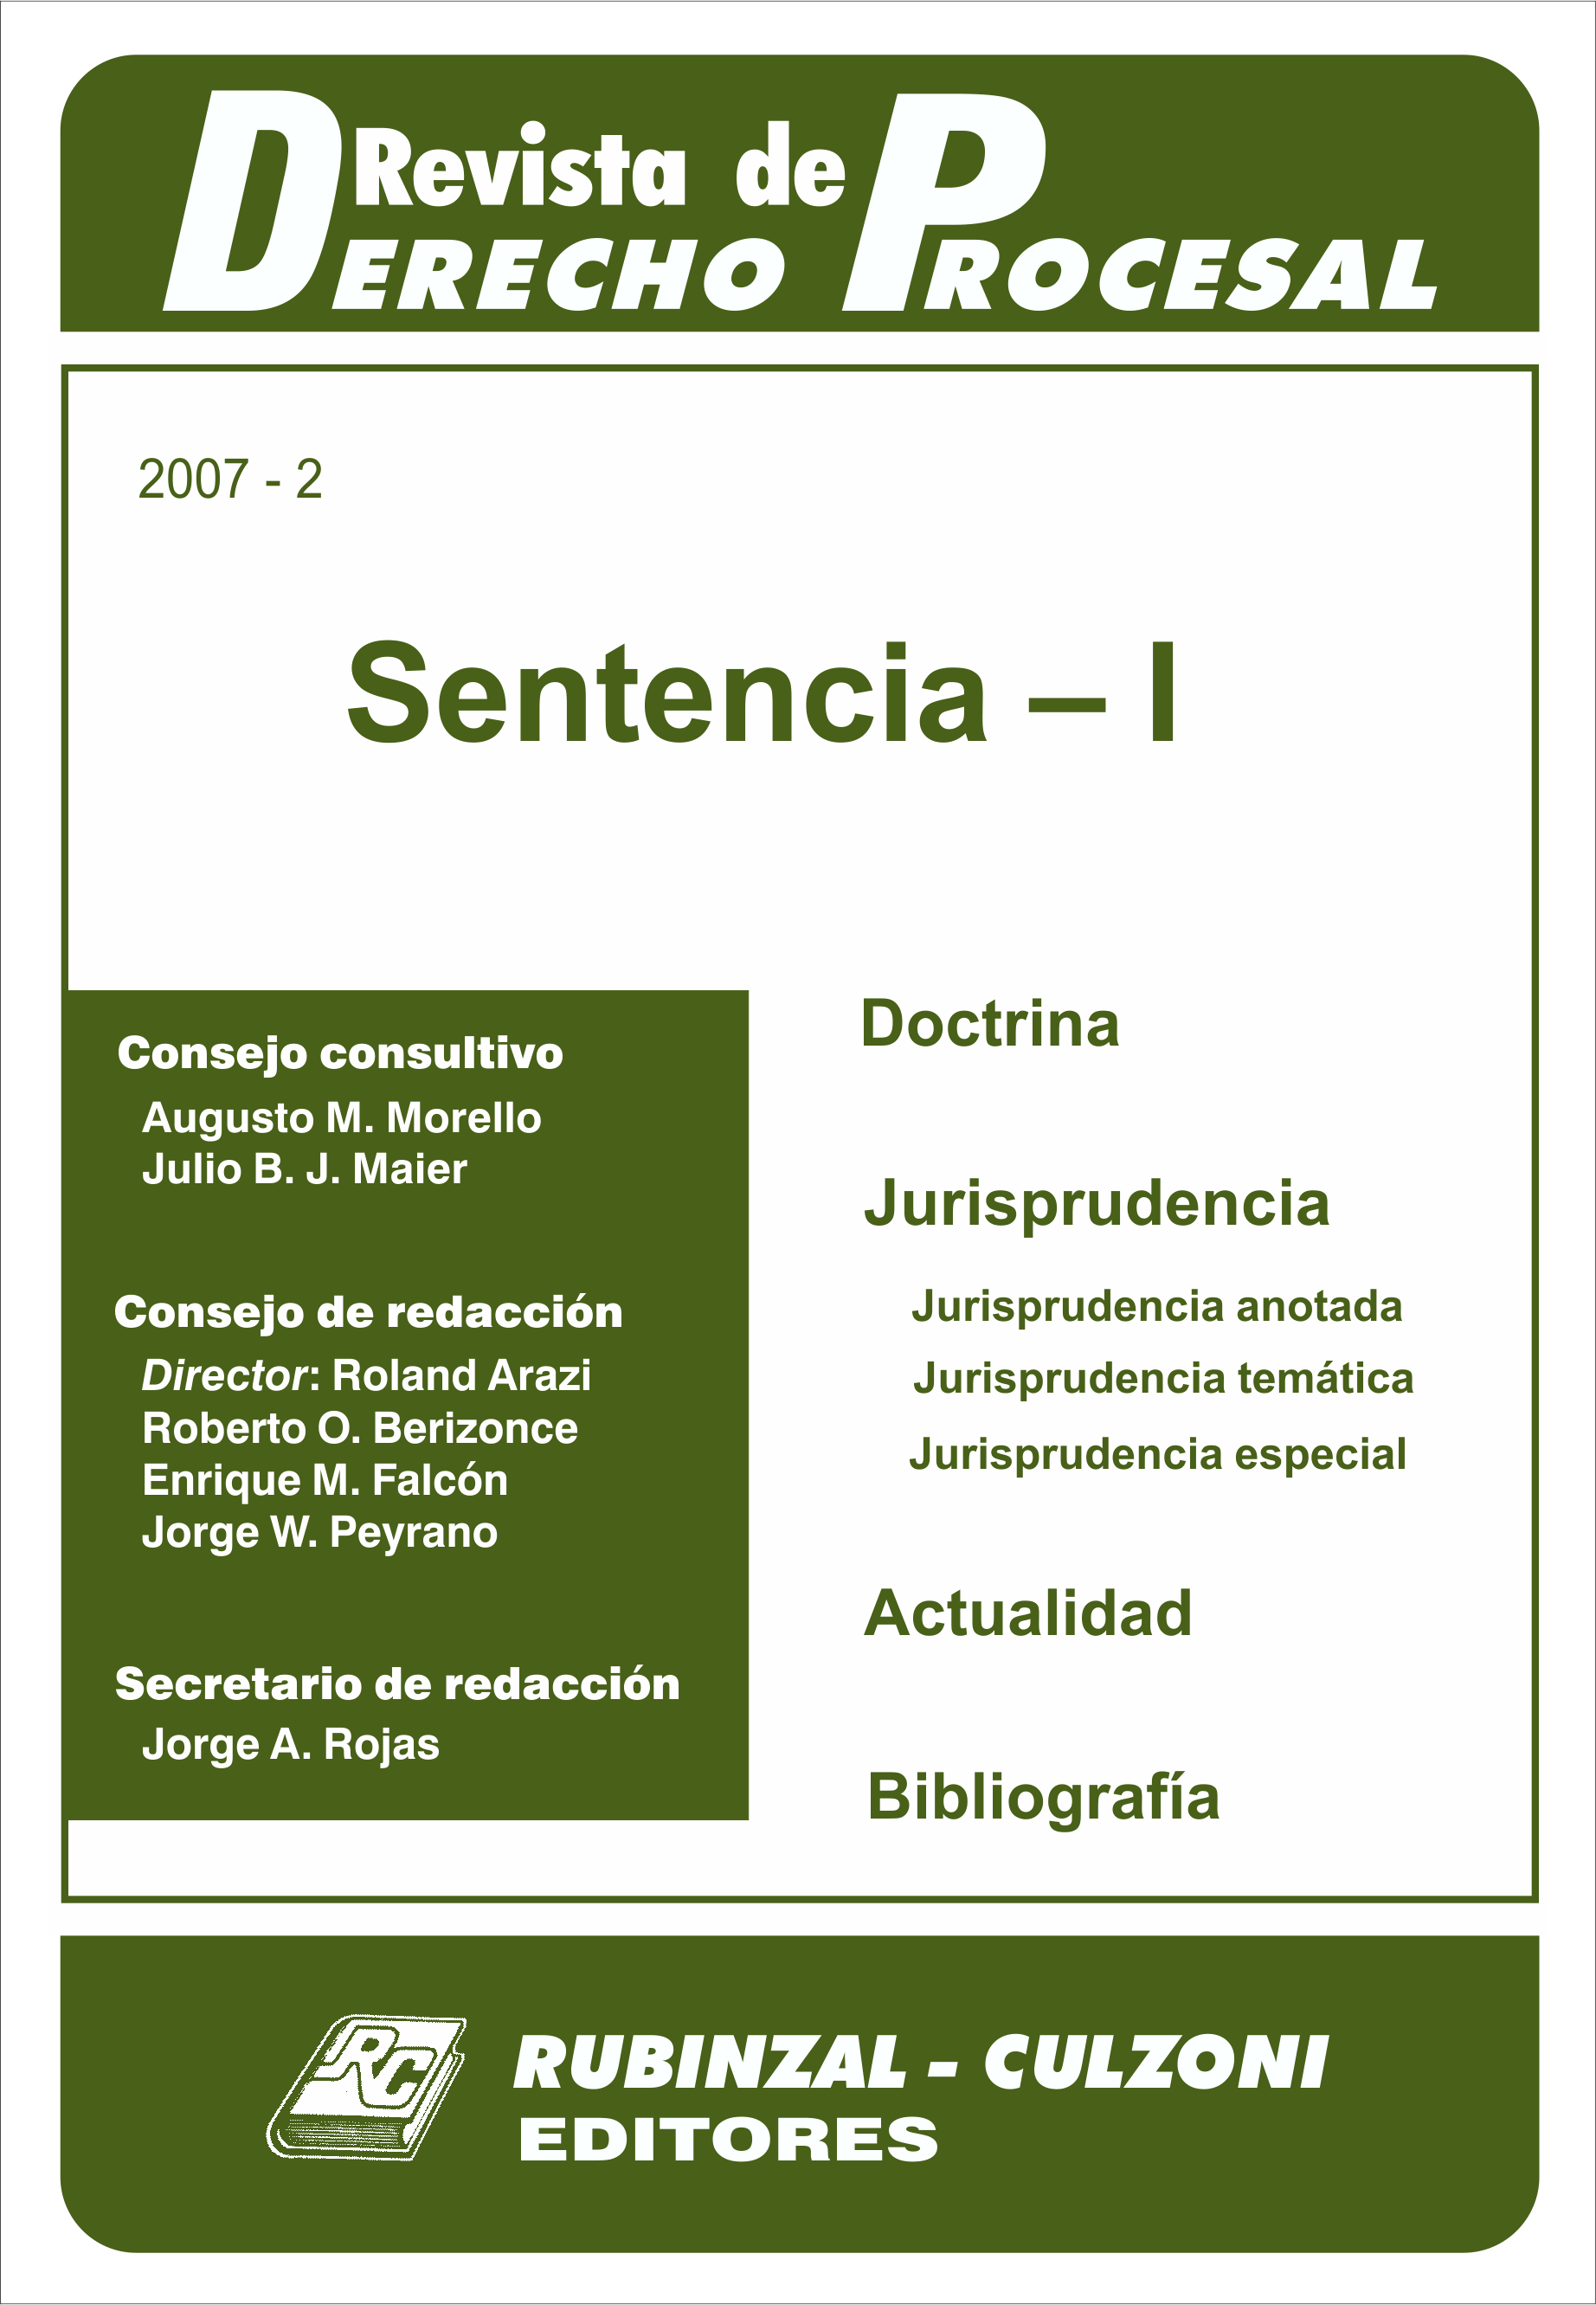 Revista de Derecho Procesal - Sentencia - I.